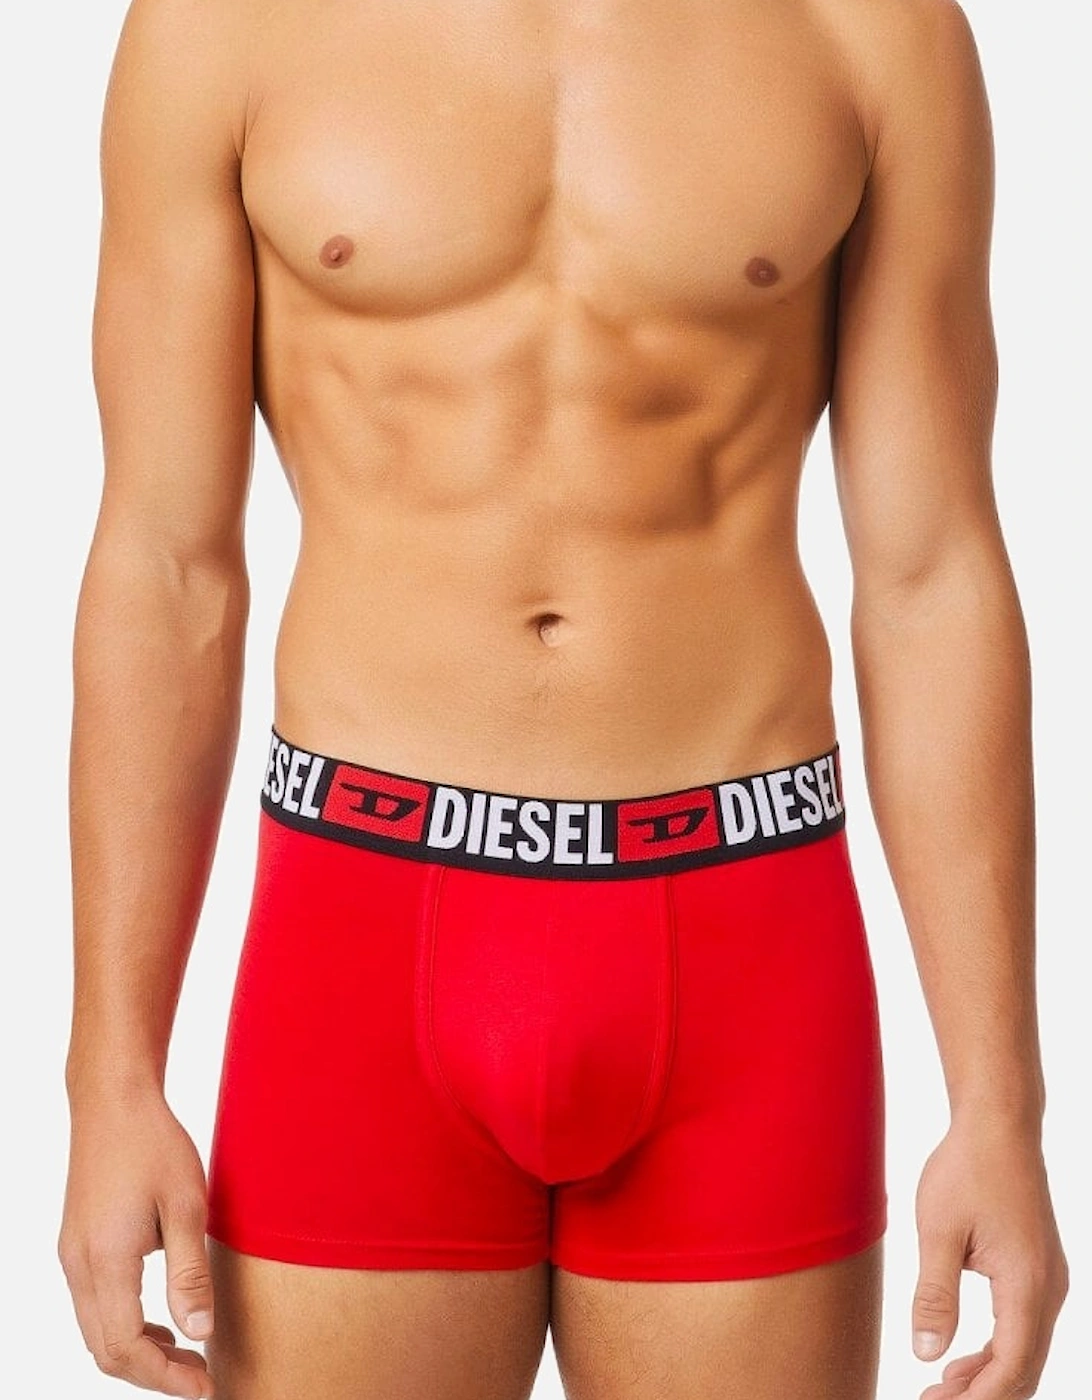 Umbx Damien 3 Pack Trunks Underwear E5326